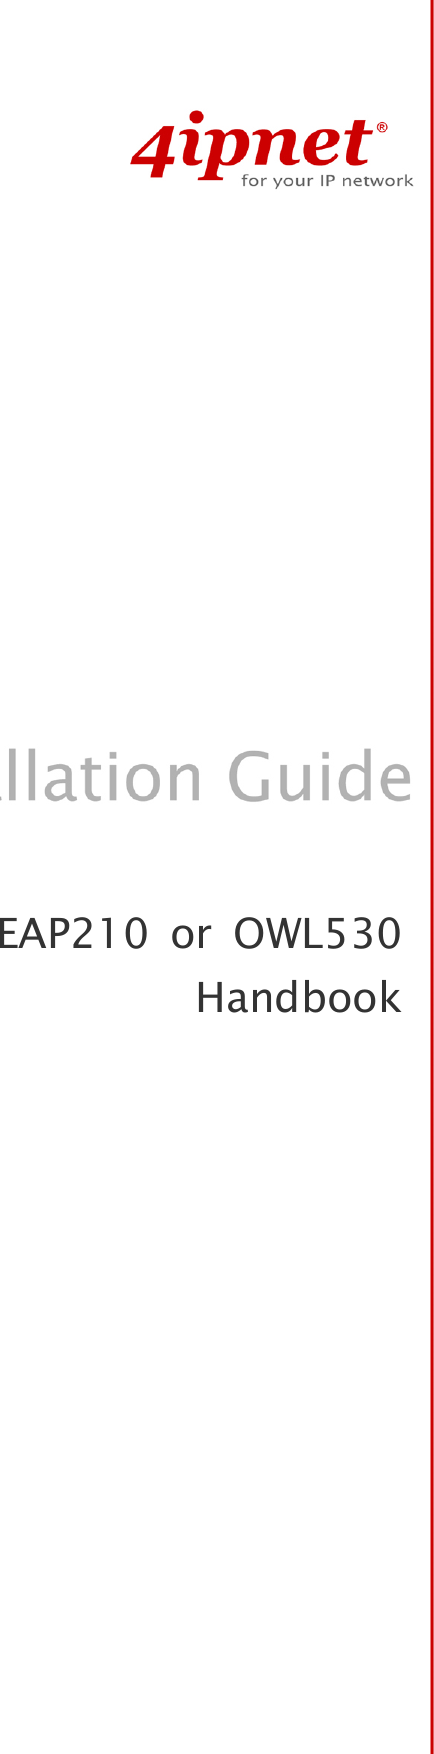                      EAP210 or OWL530 Handbook  